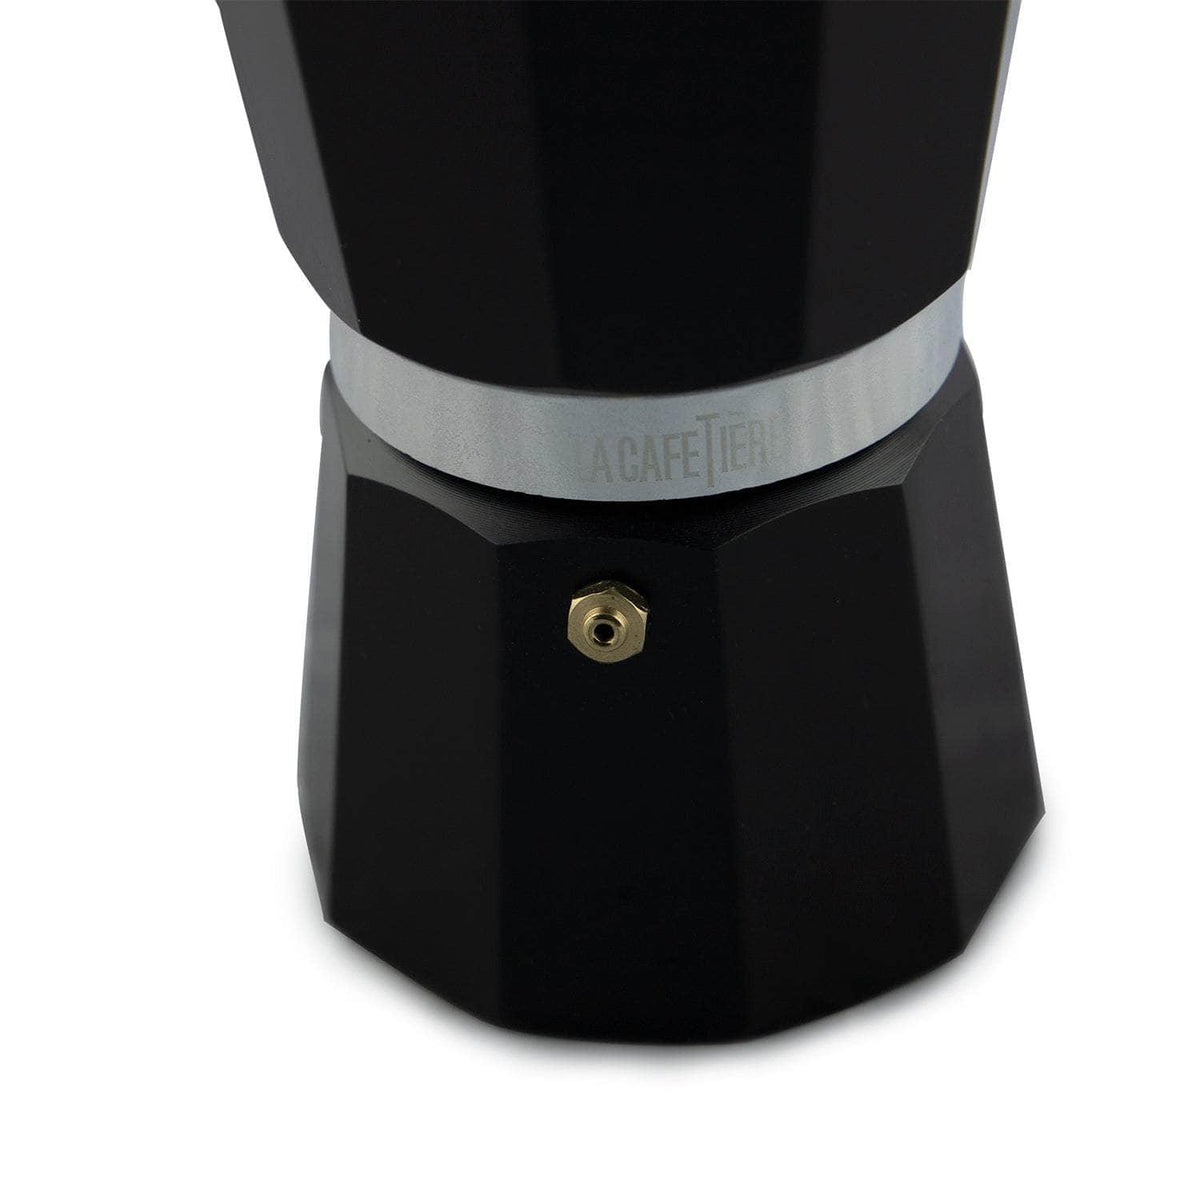 Venice Aluminium 3 Cup Espresso Maker (Moka Pot)